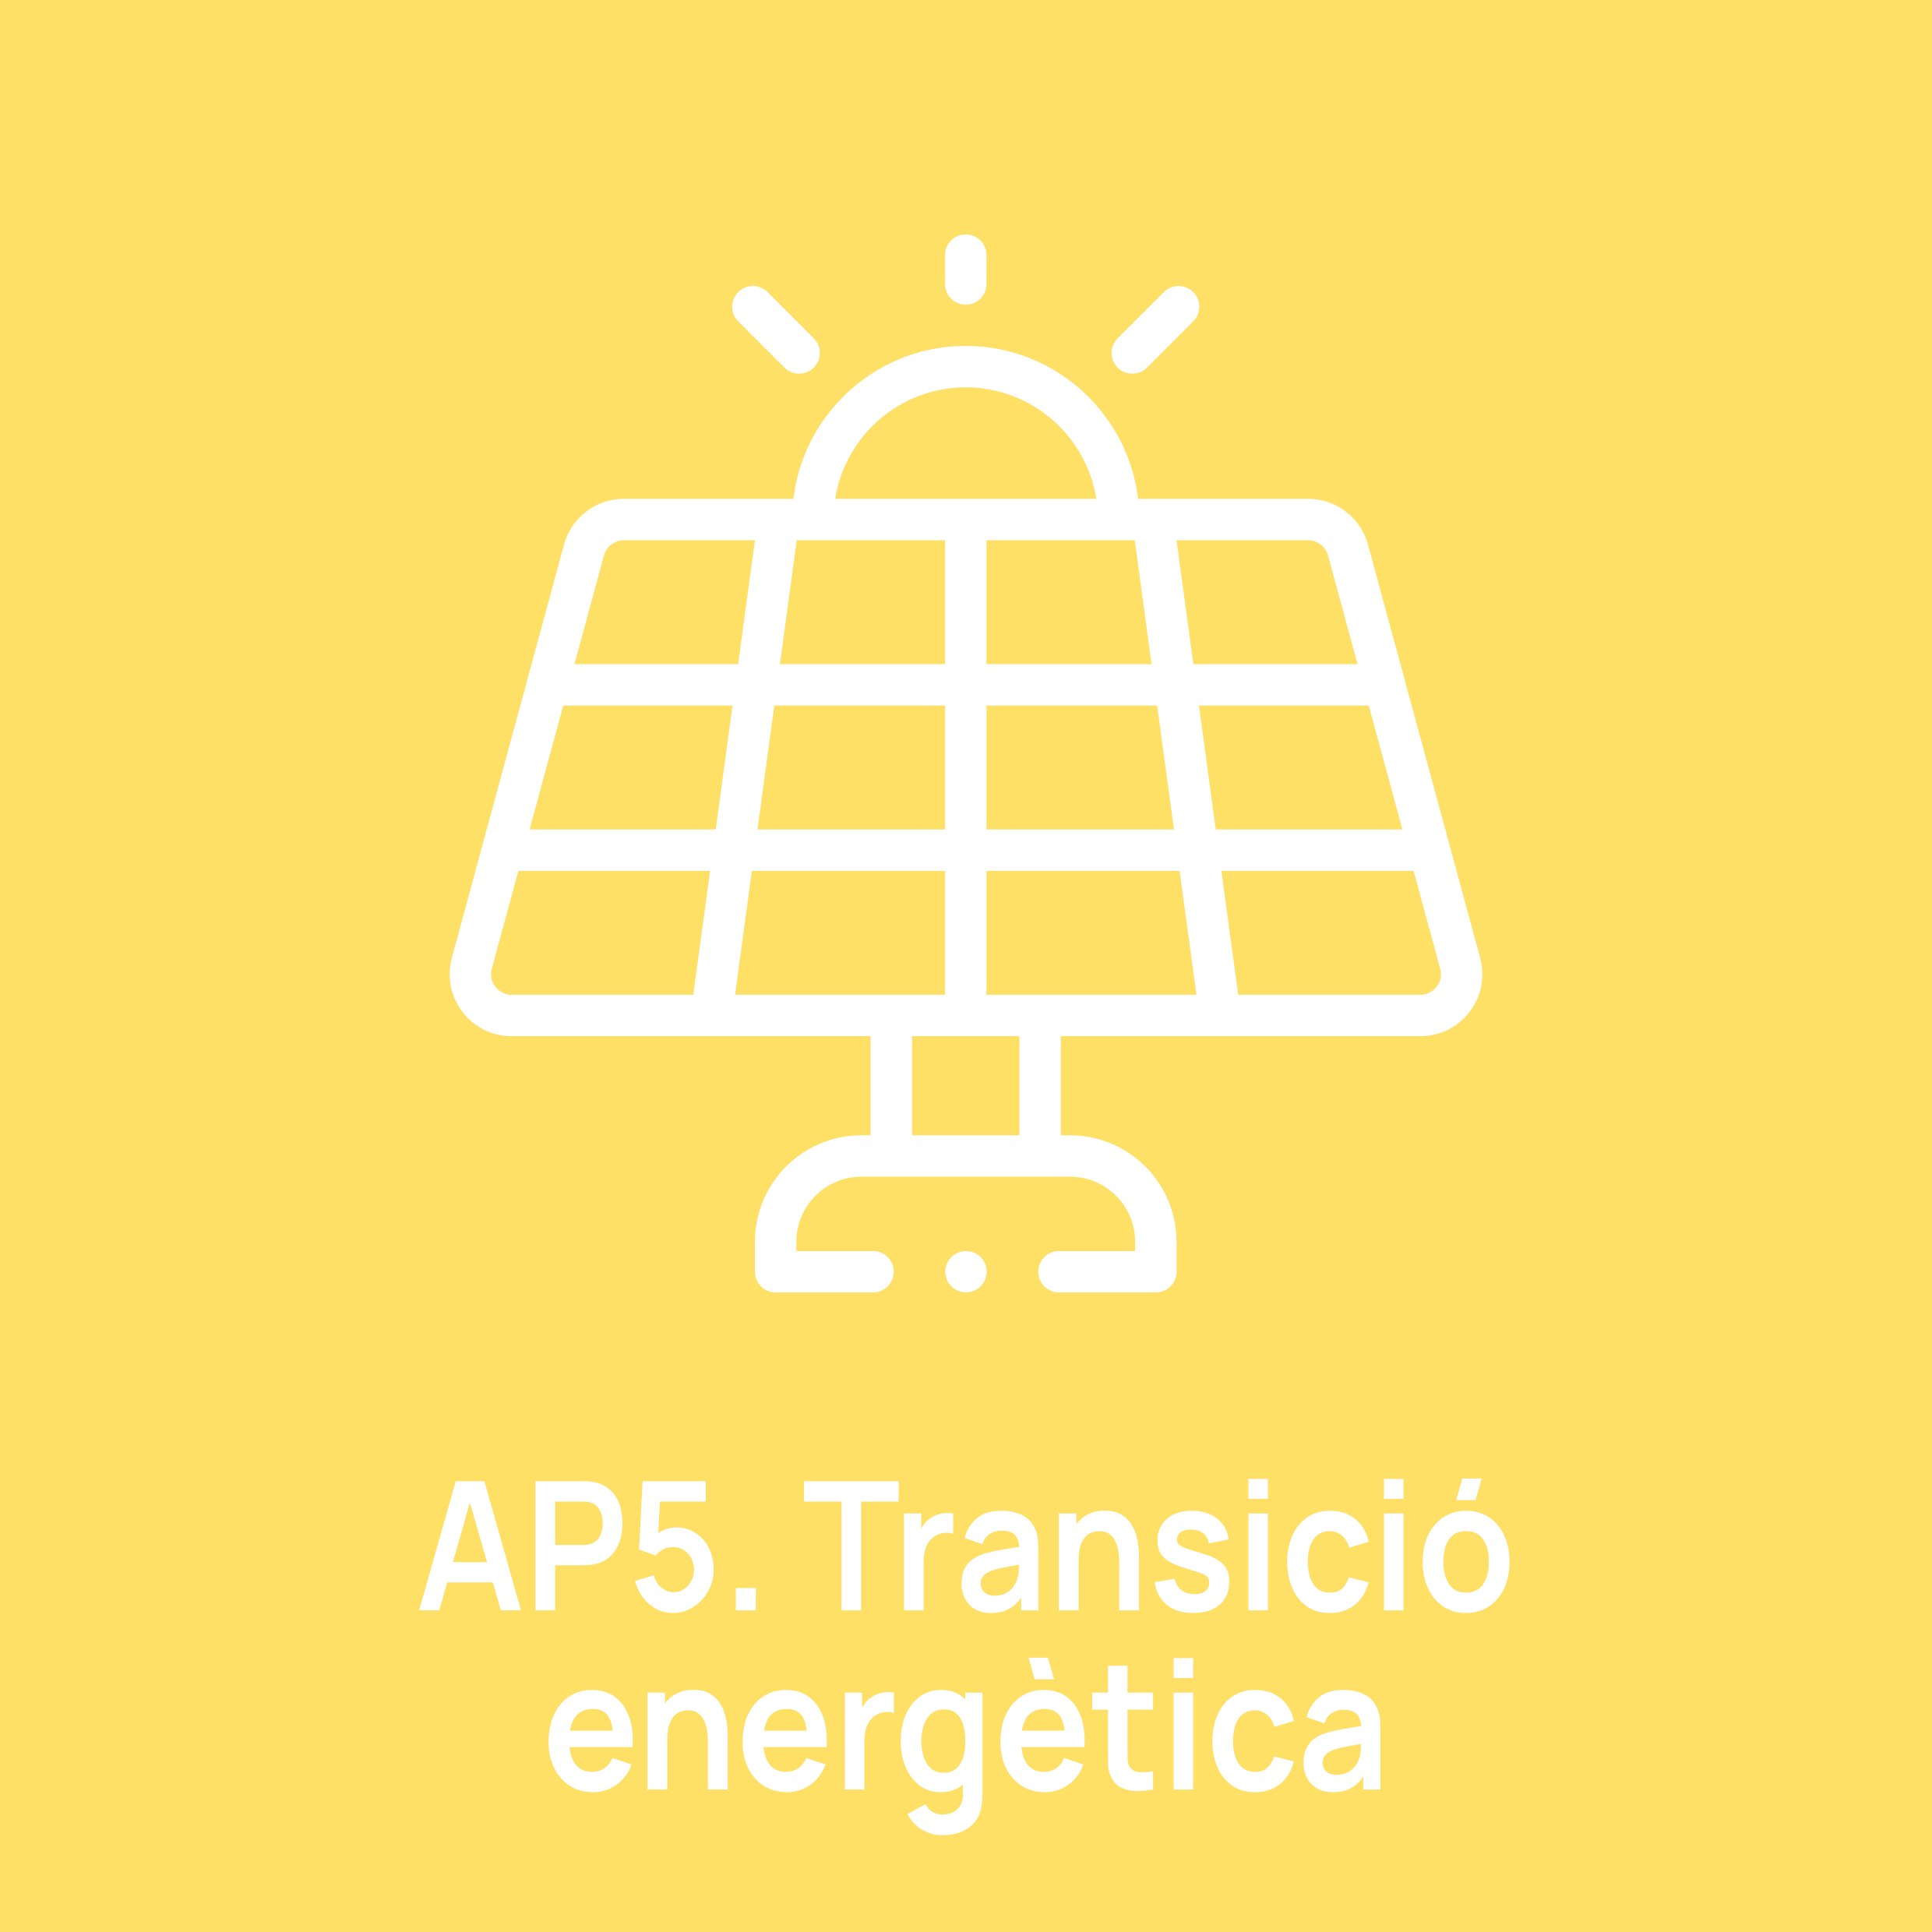 AP5 - Transició energètica